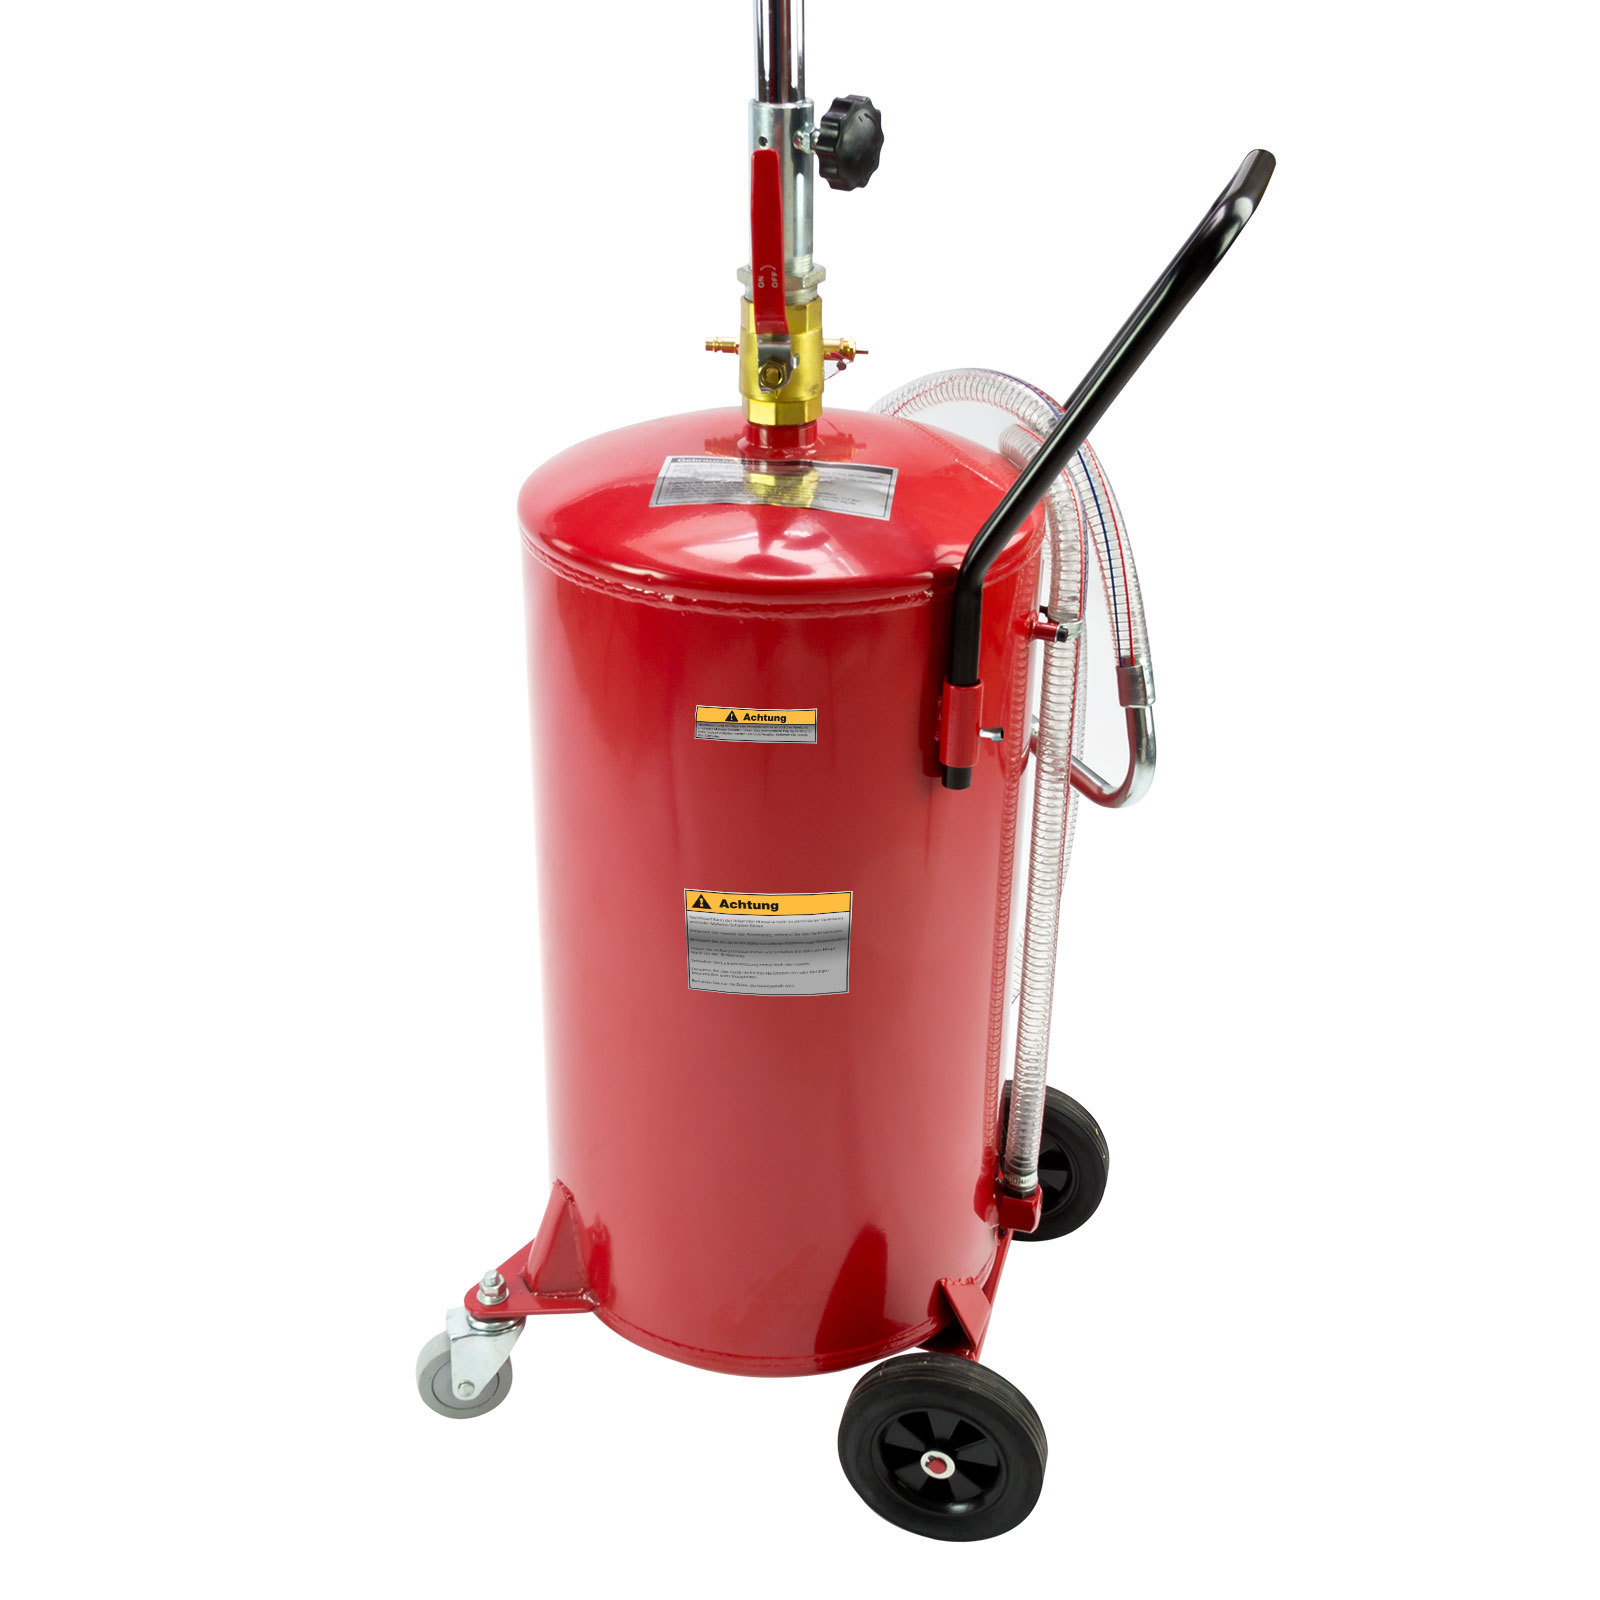 DEMA Ölauffanggerät pneumatisch | 60 Liter